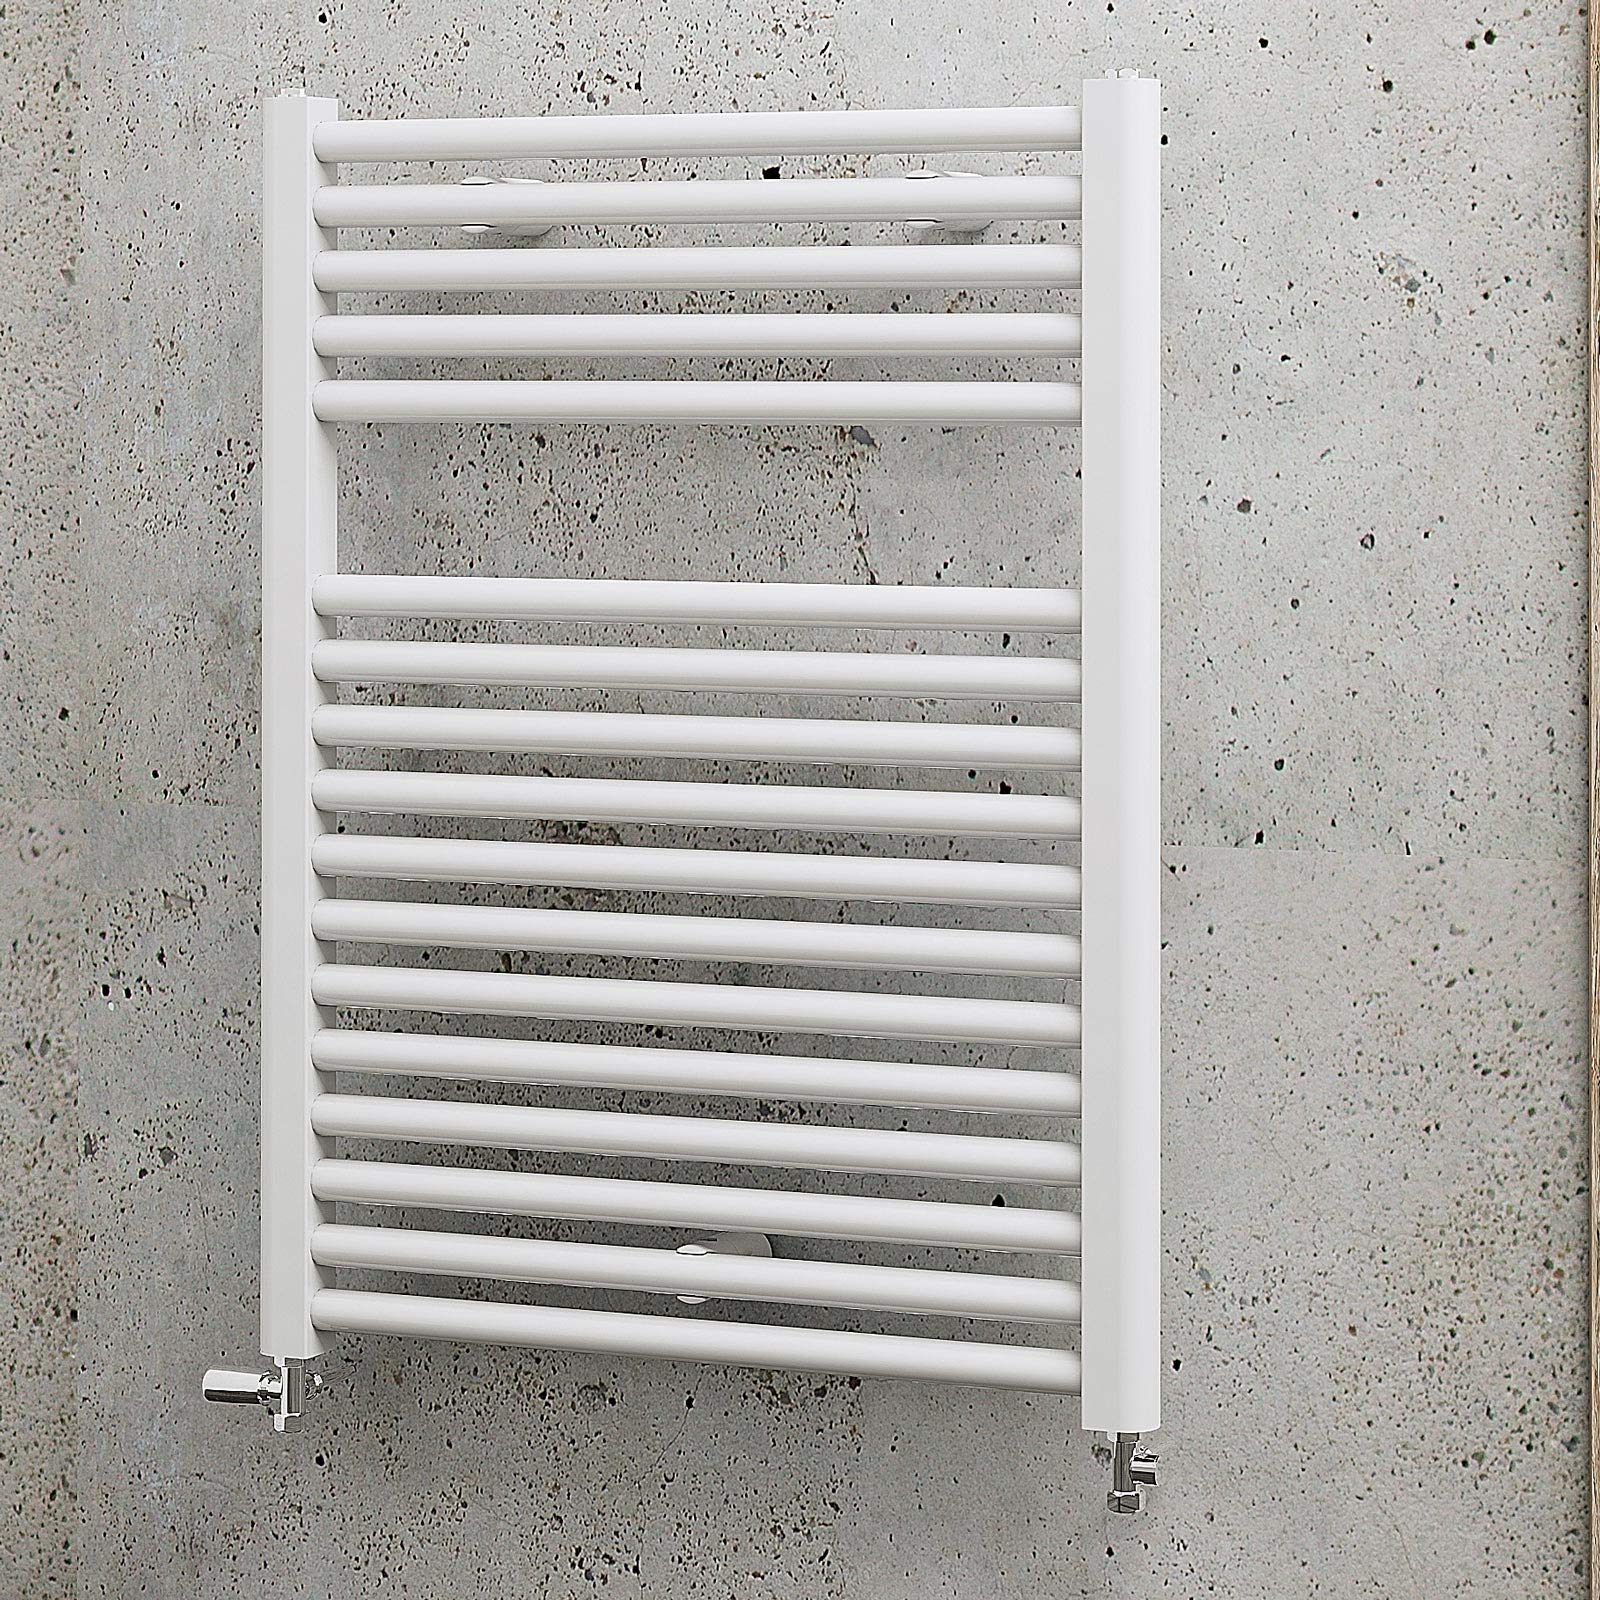 Schulte Badheizkörper München, 77 x 60 cm, 532 Watt Leistung, Anschluss unten, alpinweiß, Designheizkörper, EP07660 04